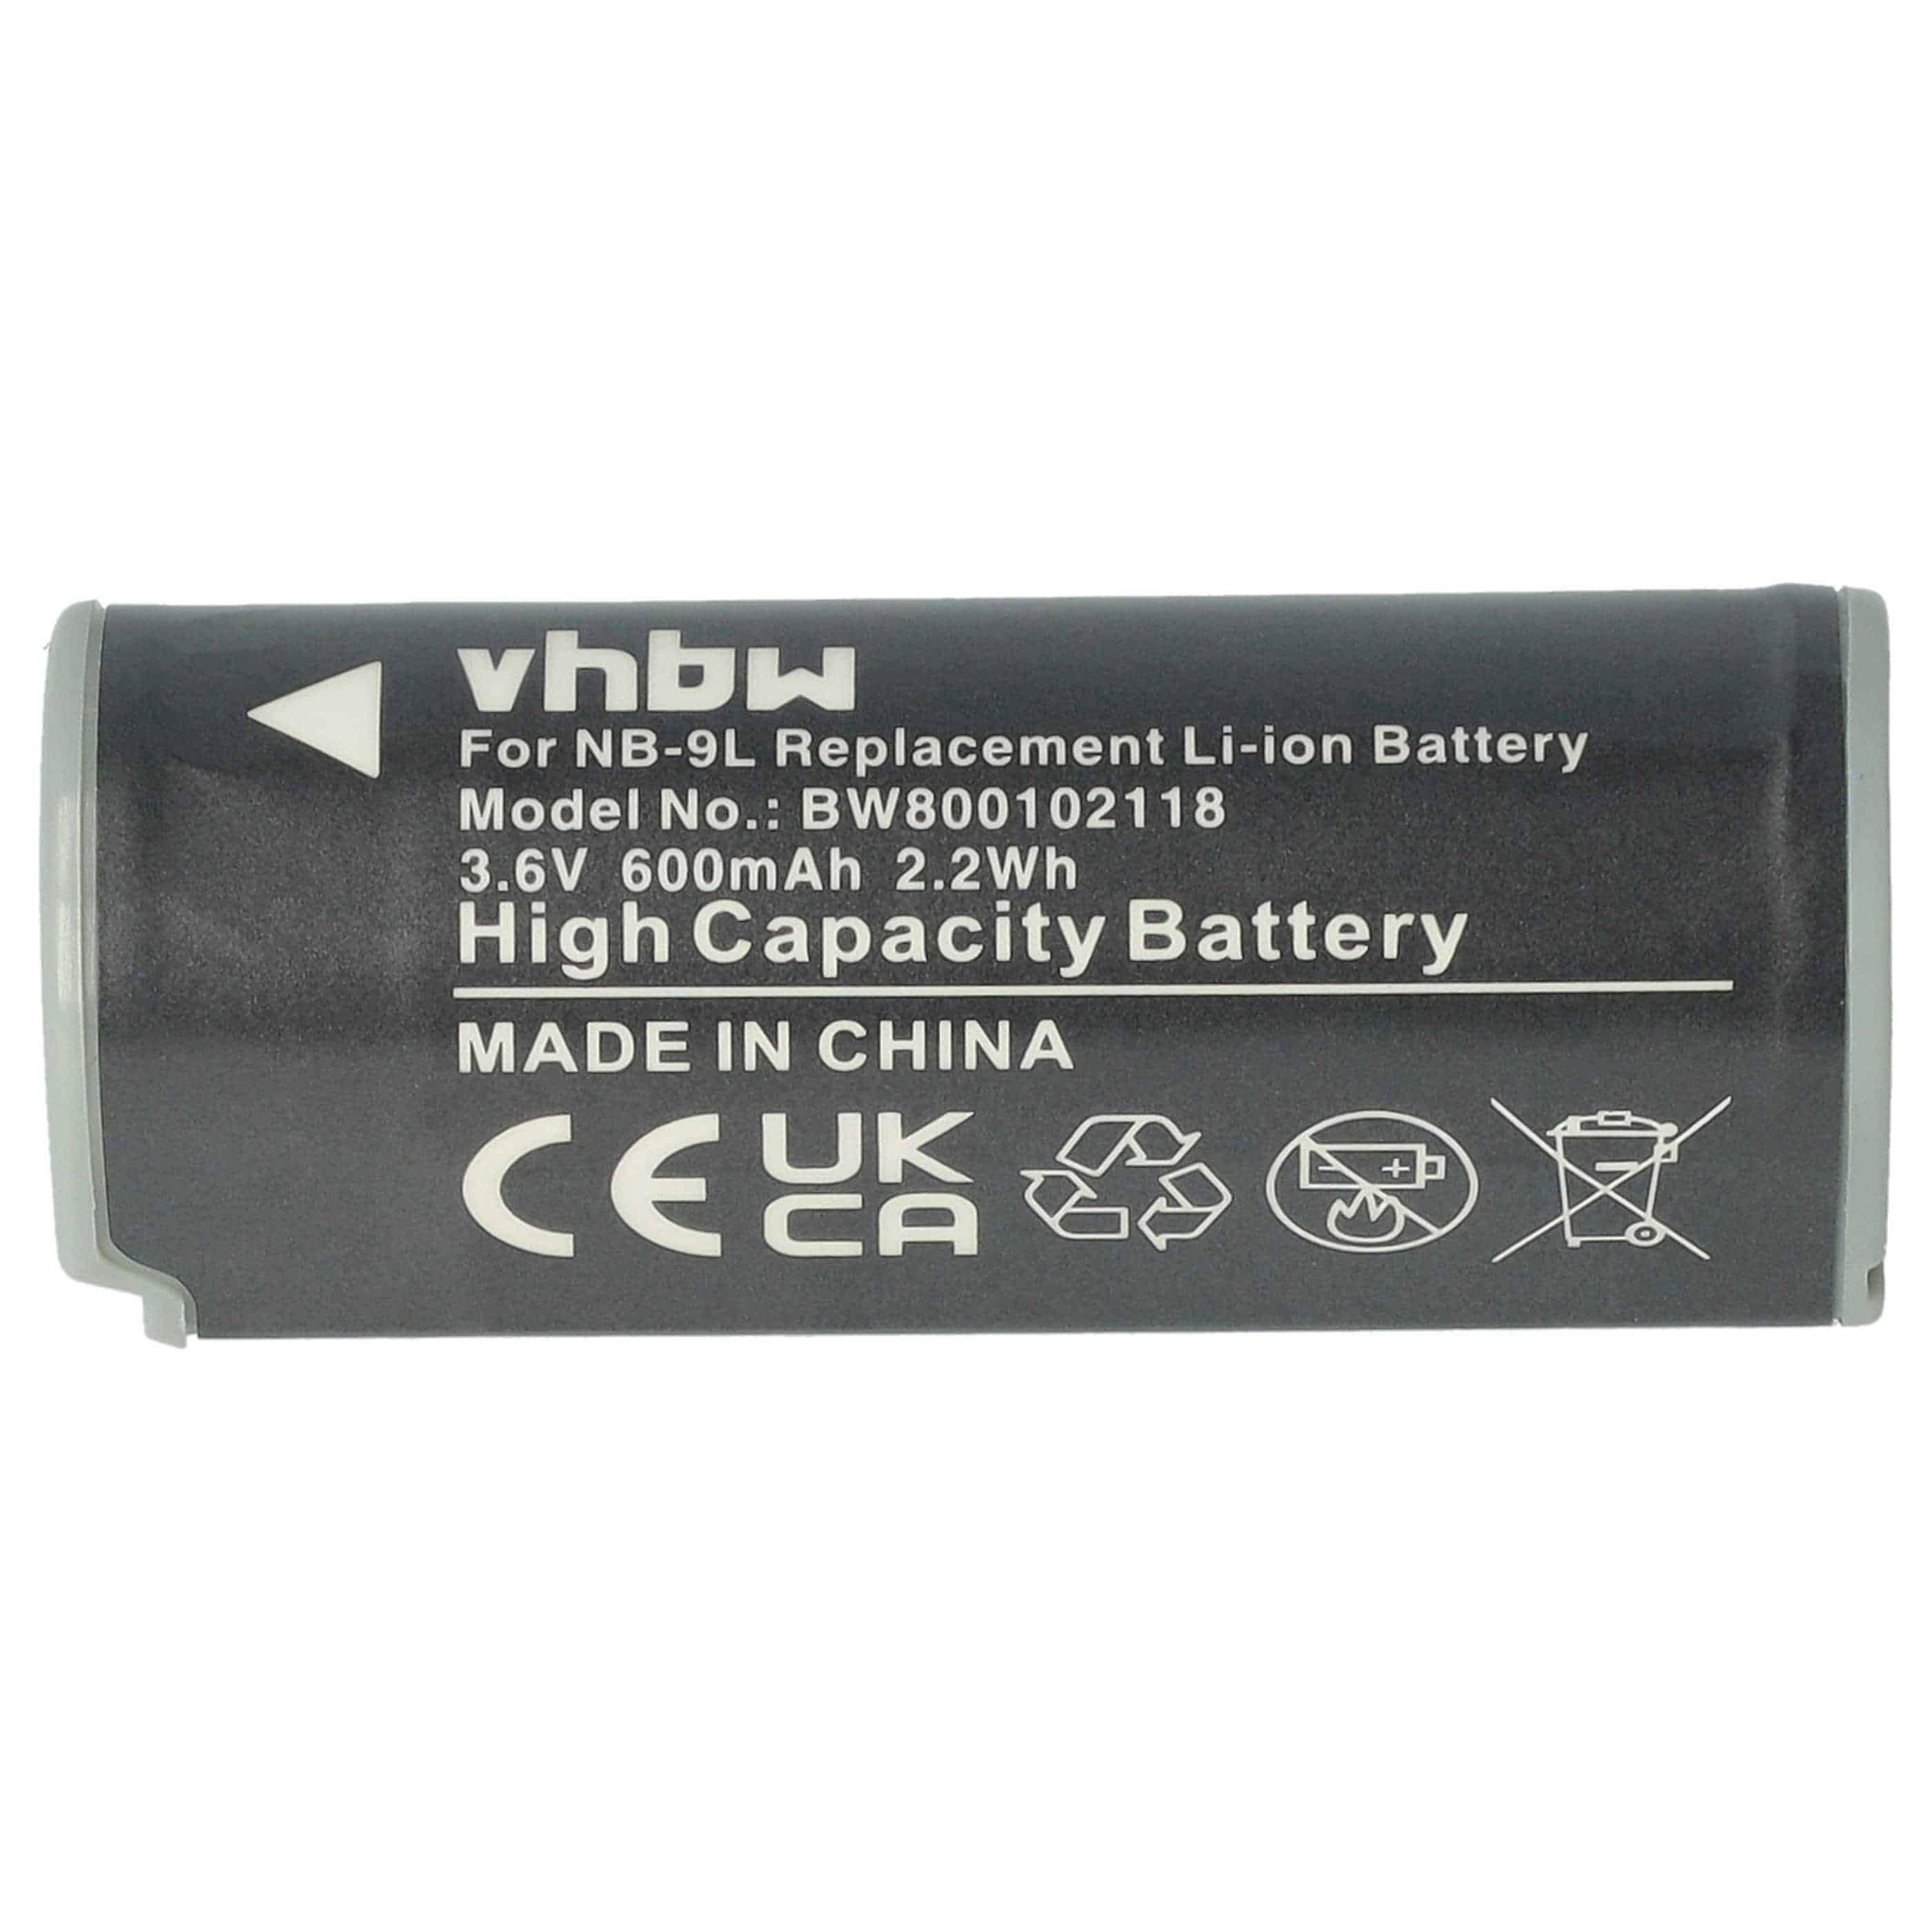 Batterie remplace Canon NB-9L pour appareil photo - 600mAh 3,6V Li-ion